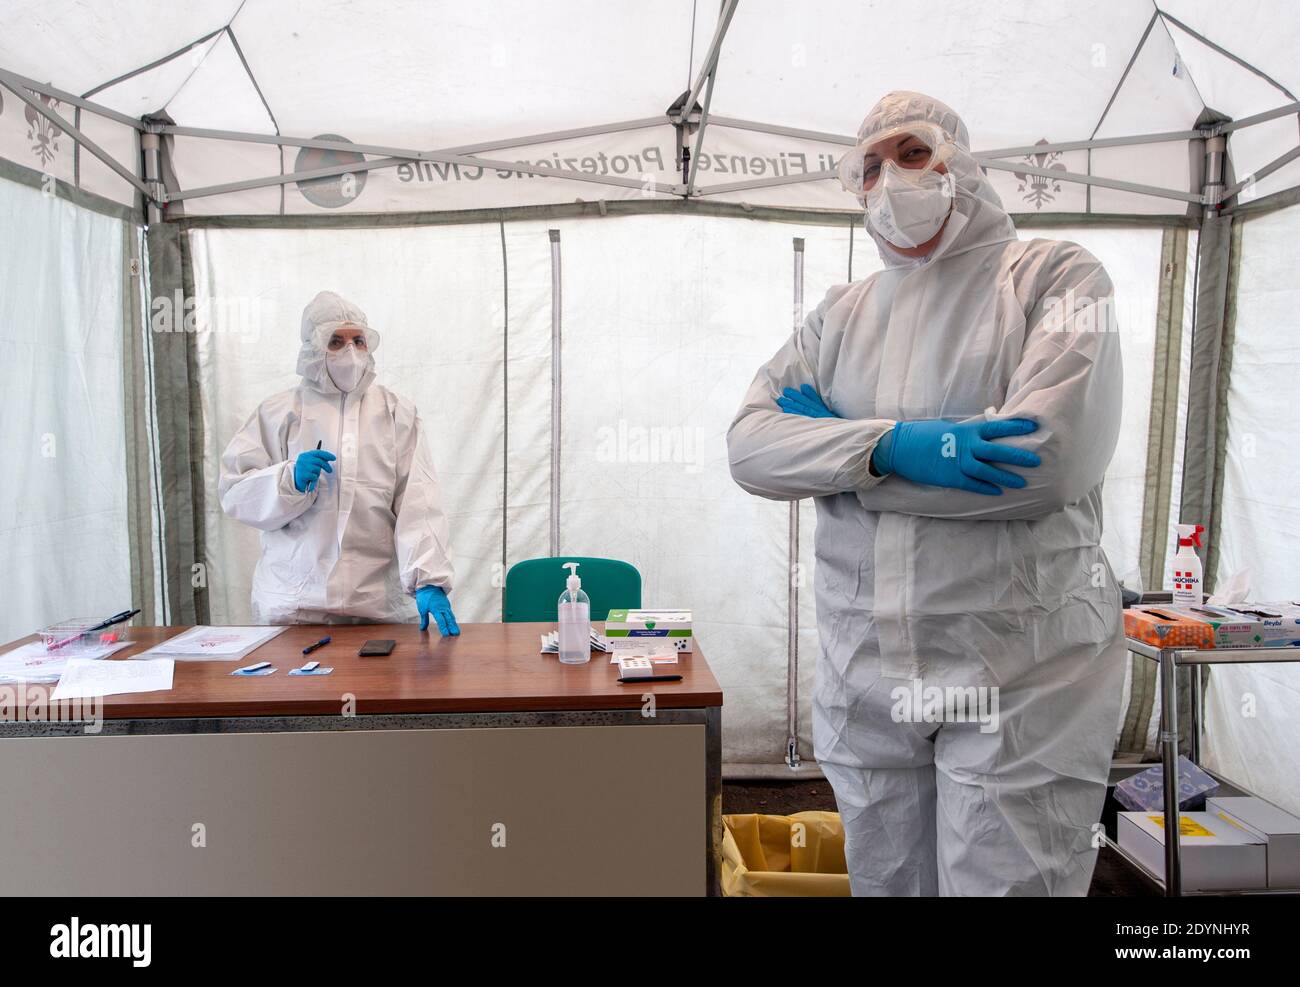 Florence, Italie - 2020, décembre 21: Des travailleurs de la santé non identifiés dans un poste de santé, mis en place dans une tente, pendant la pandémie Covid-19. Suites stériles. Banque D'Images